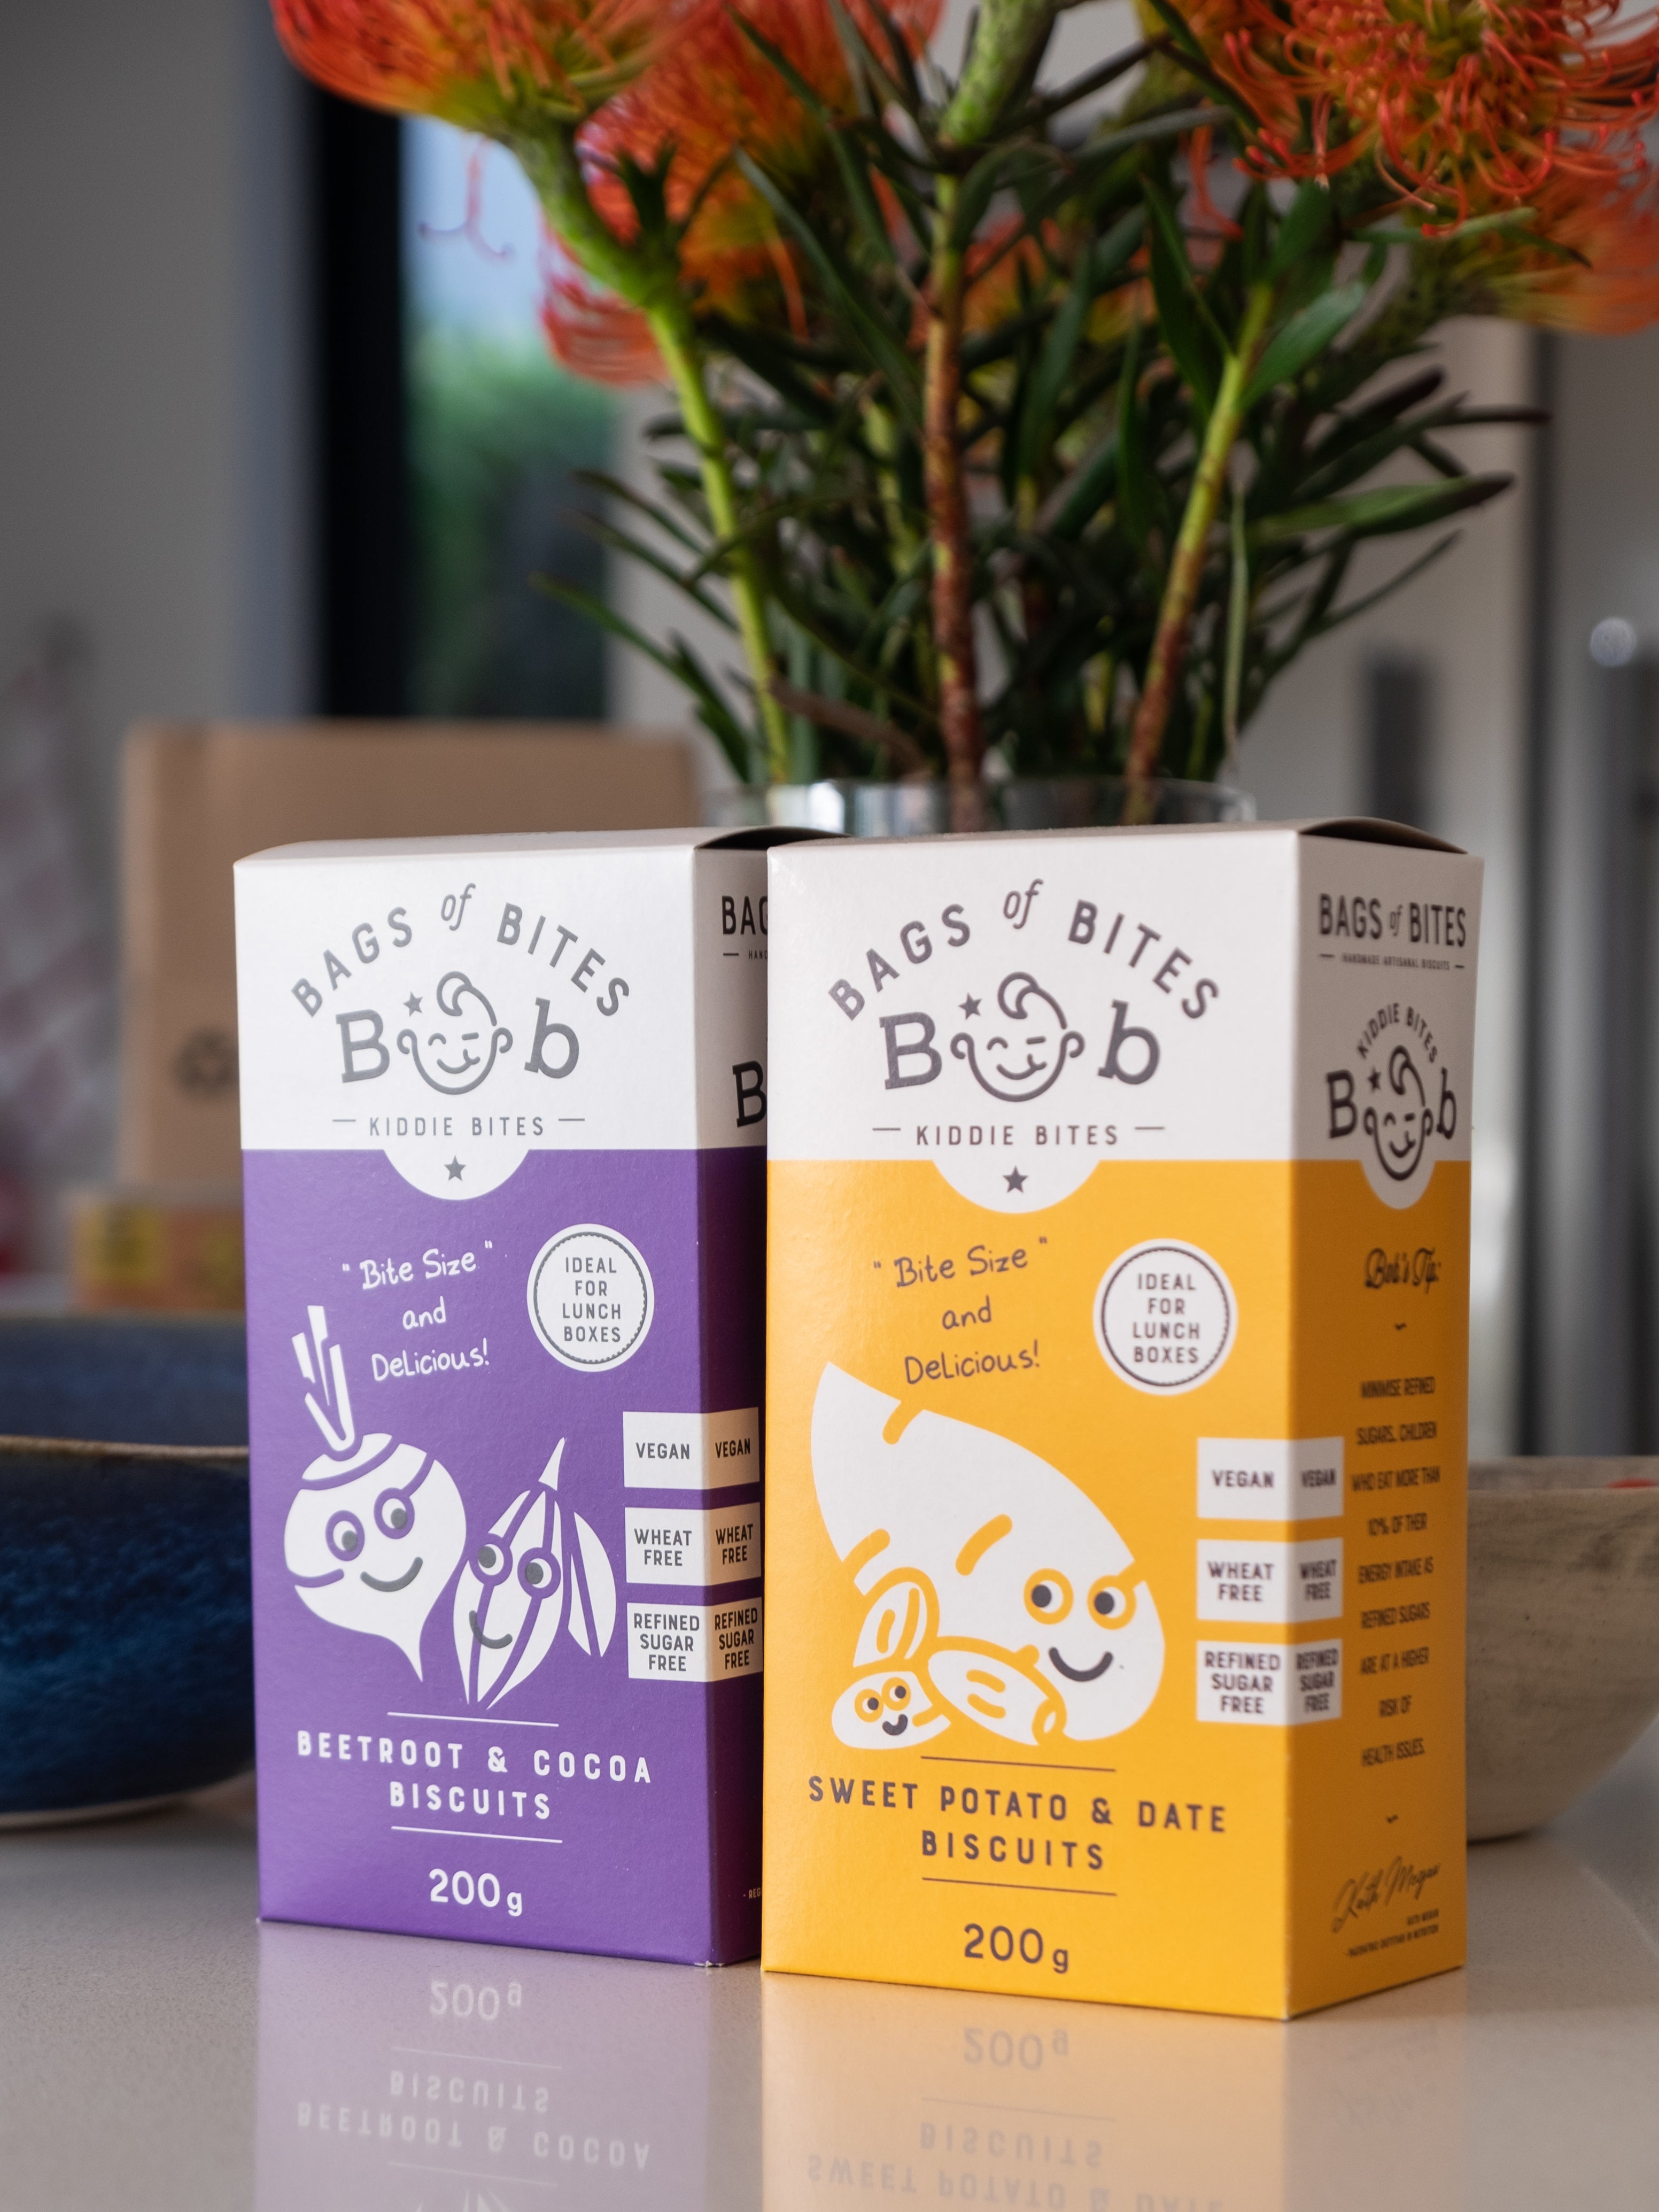 Bob Kiddies Bites - Beetroot & Cocoa Biscuits